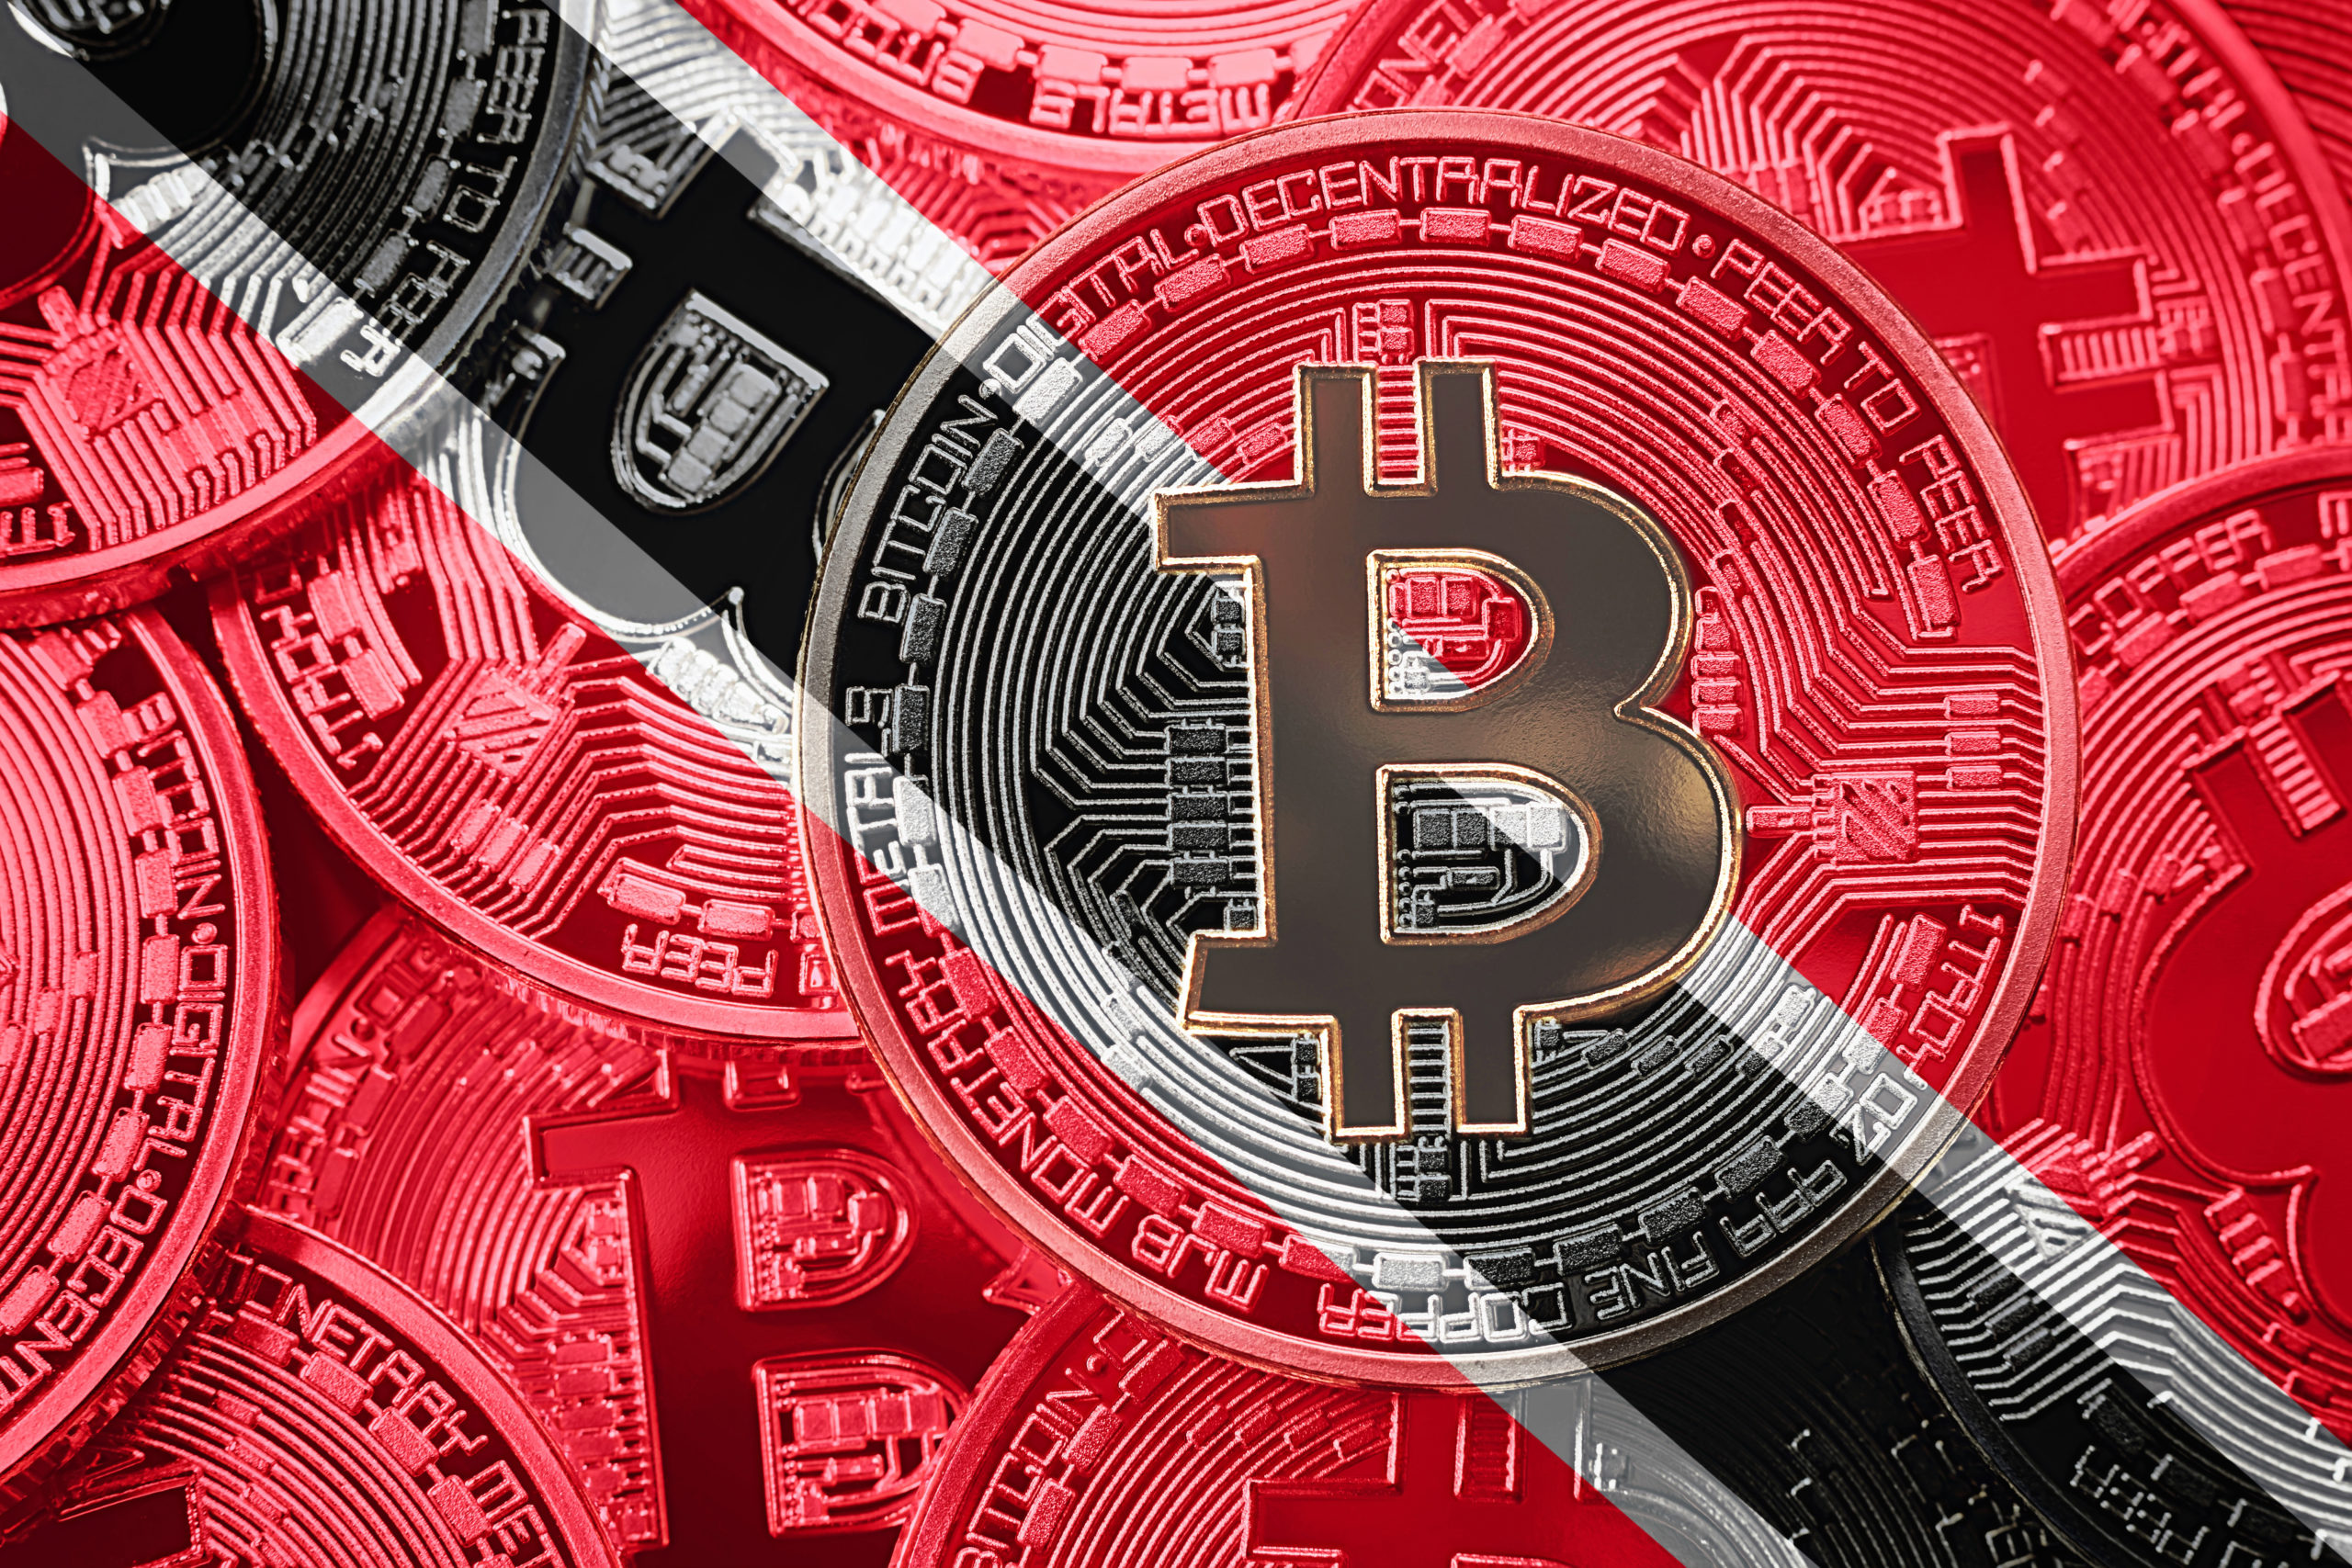 Buy Bitcoin with Cash in person in Trinidad and Tobago